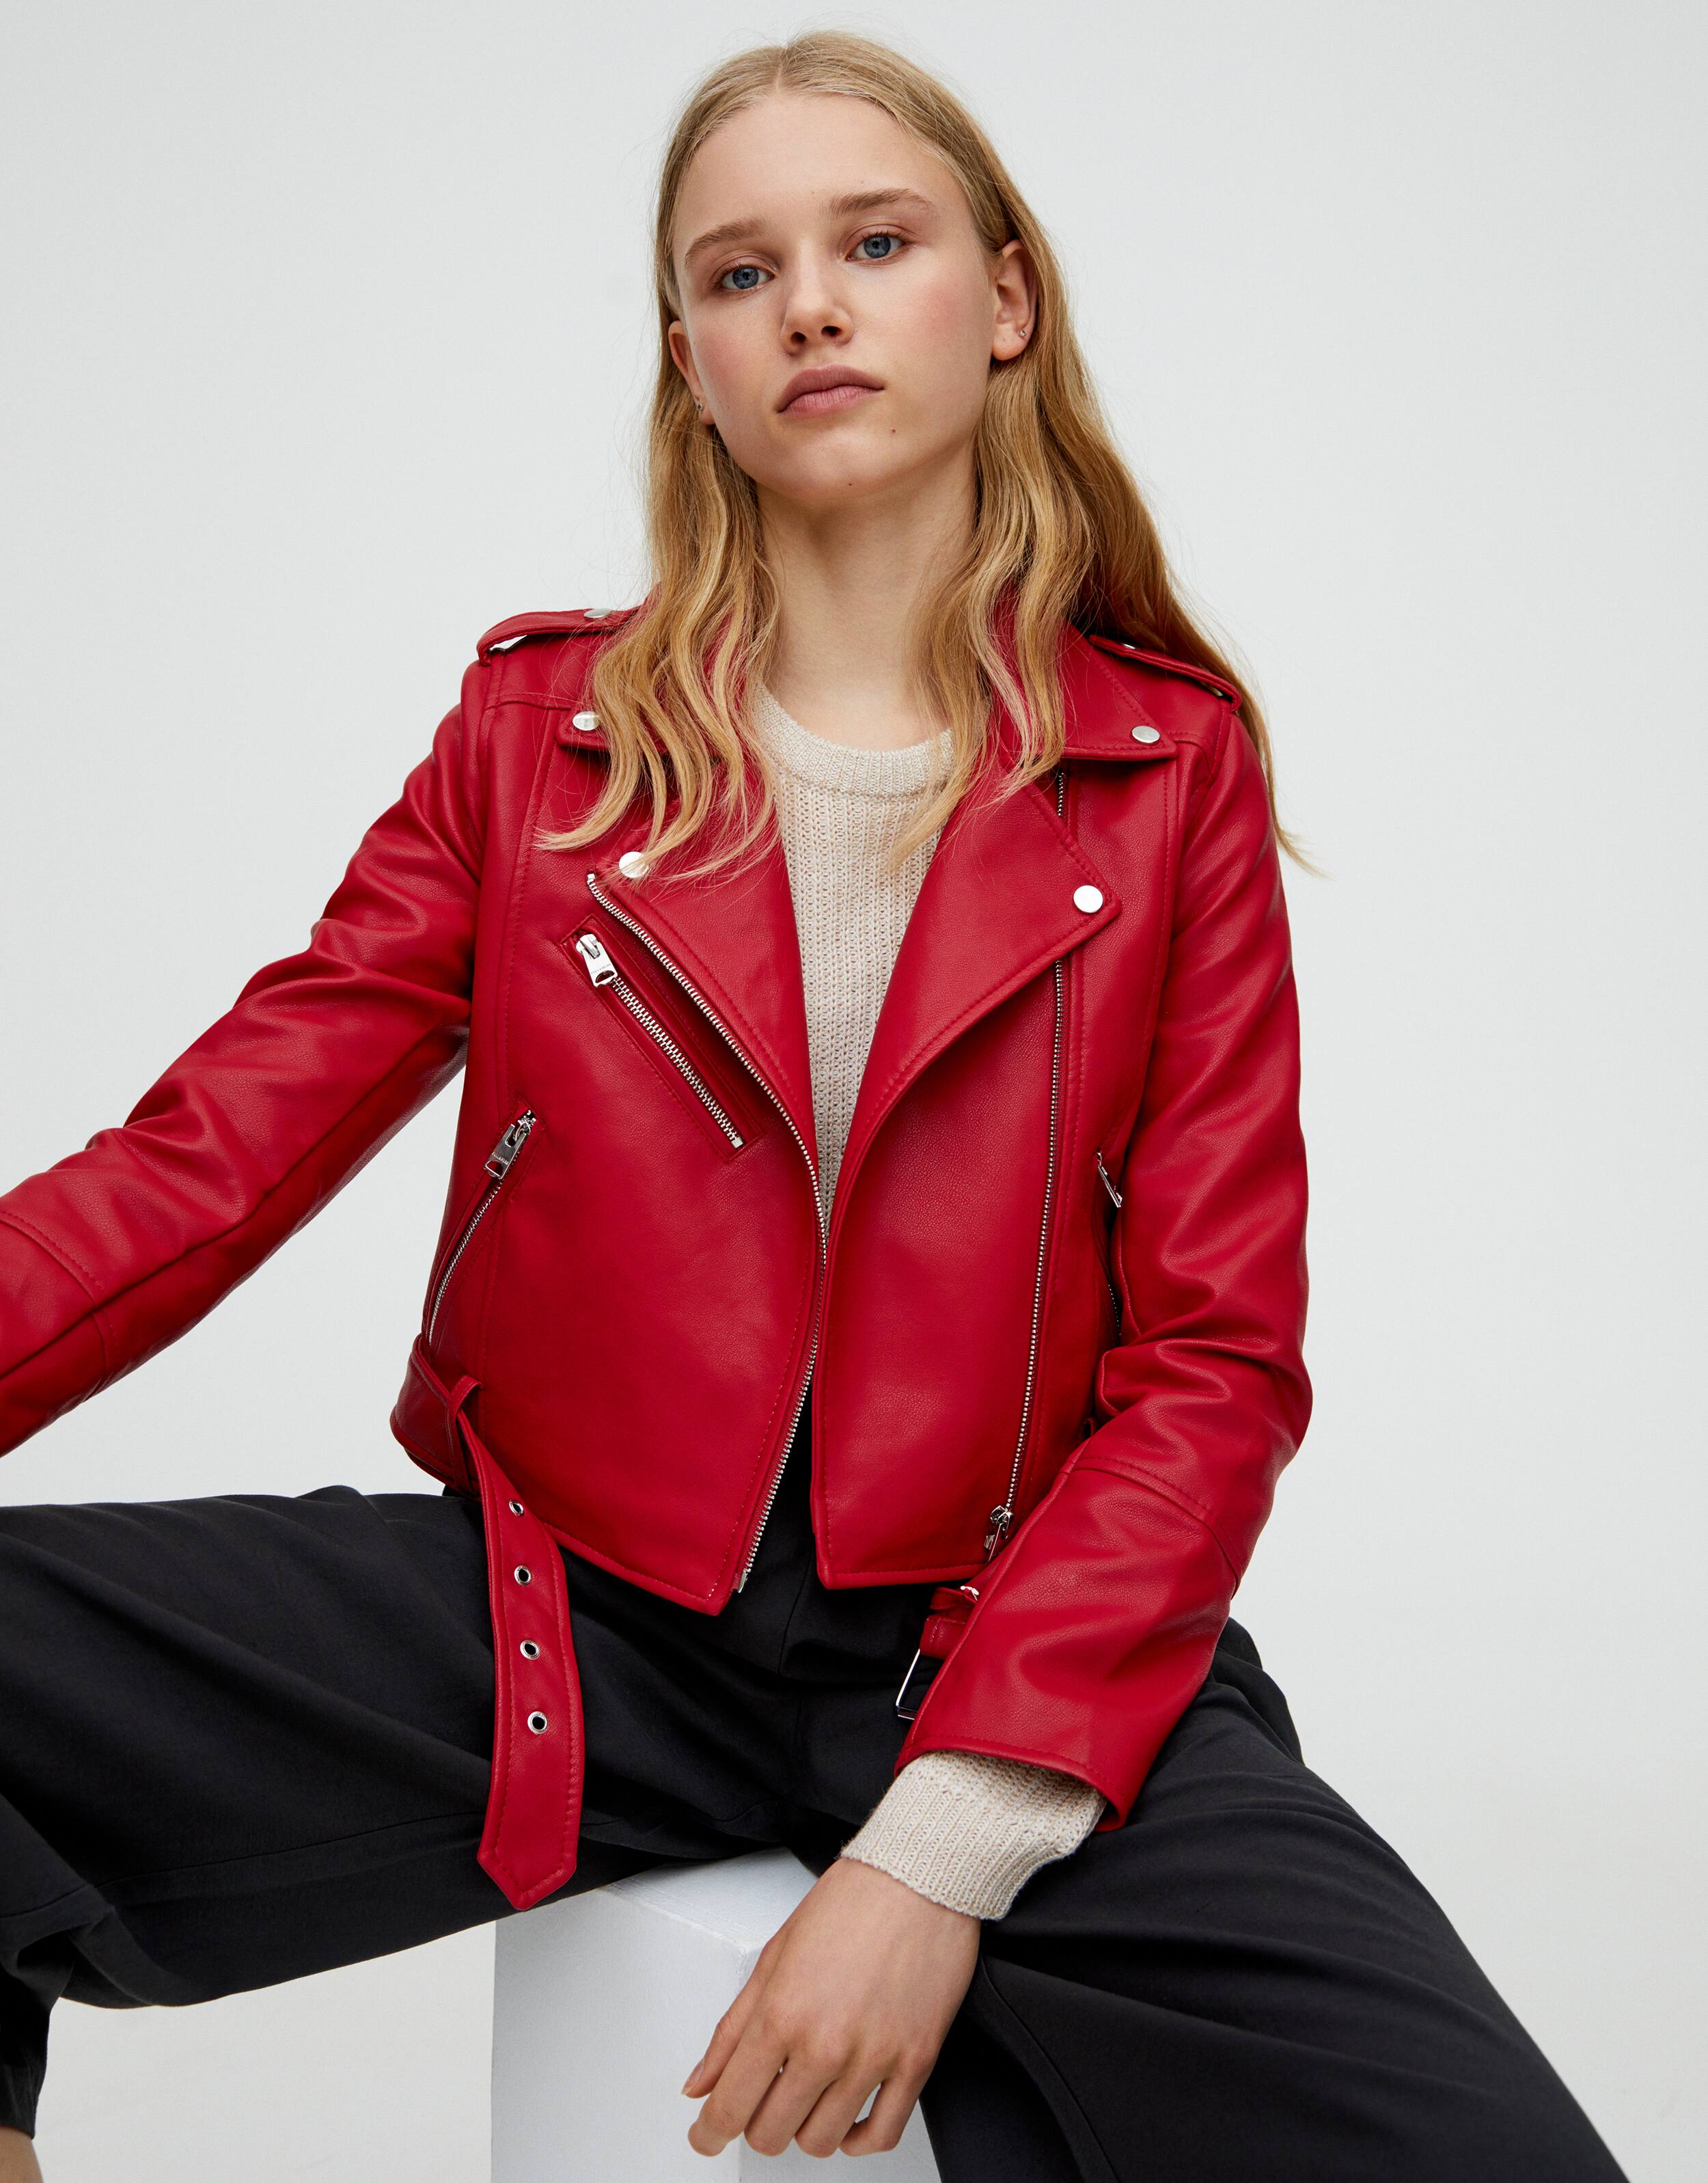 áo khoác biker da đỏ - pull and bear -món đồ thời trang mùa thu